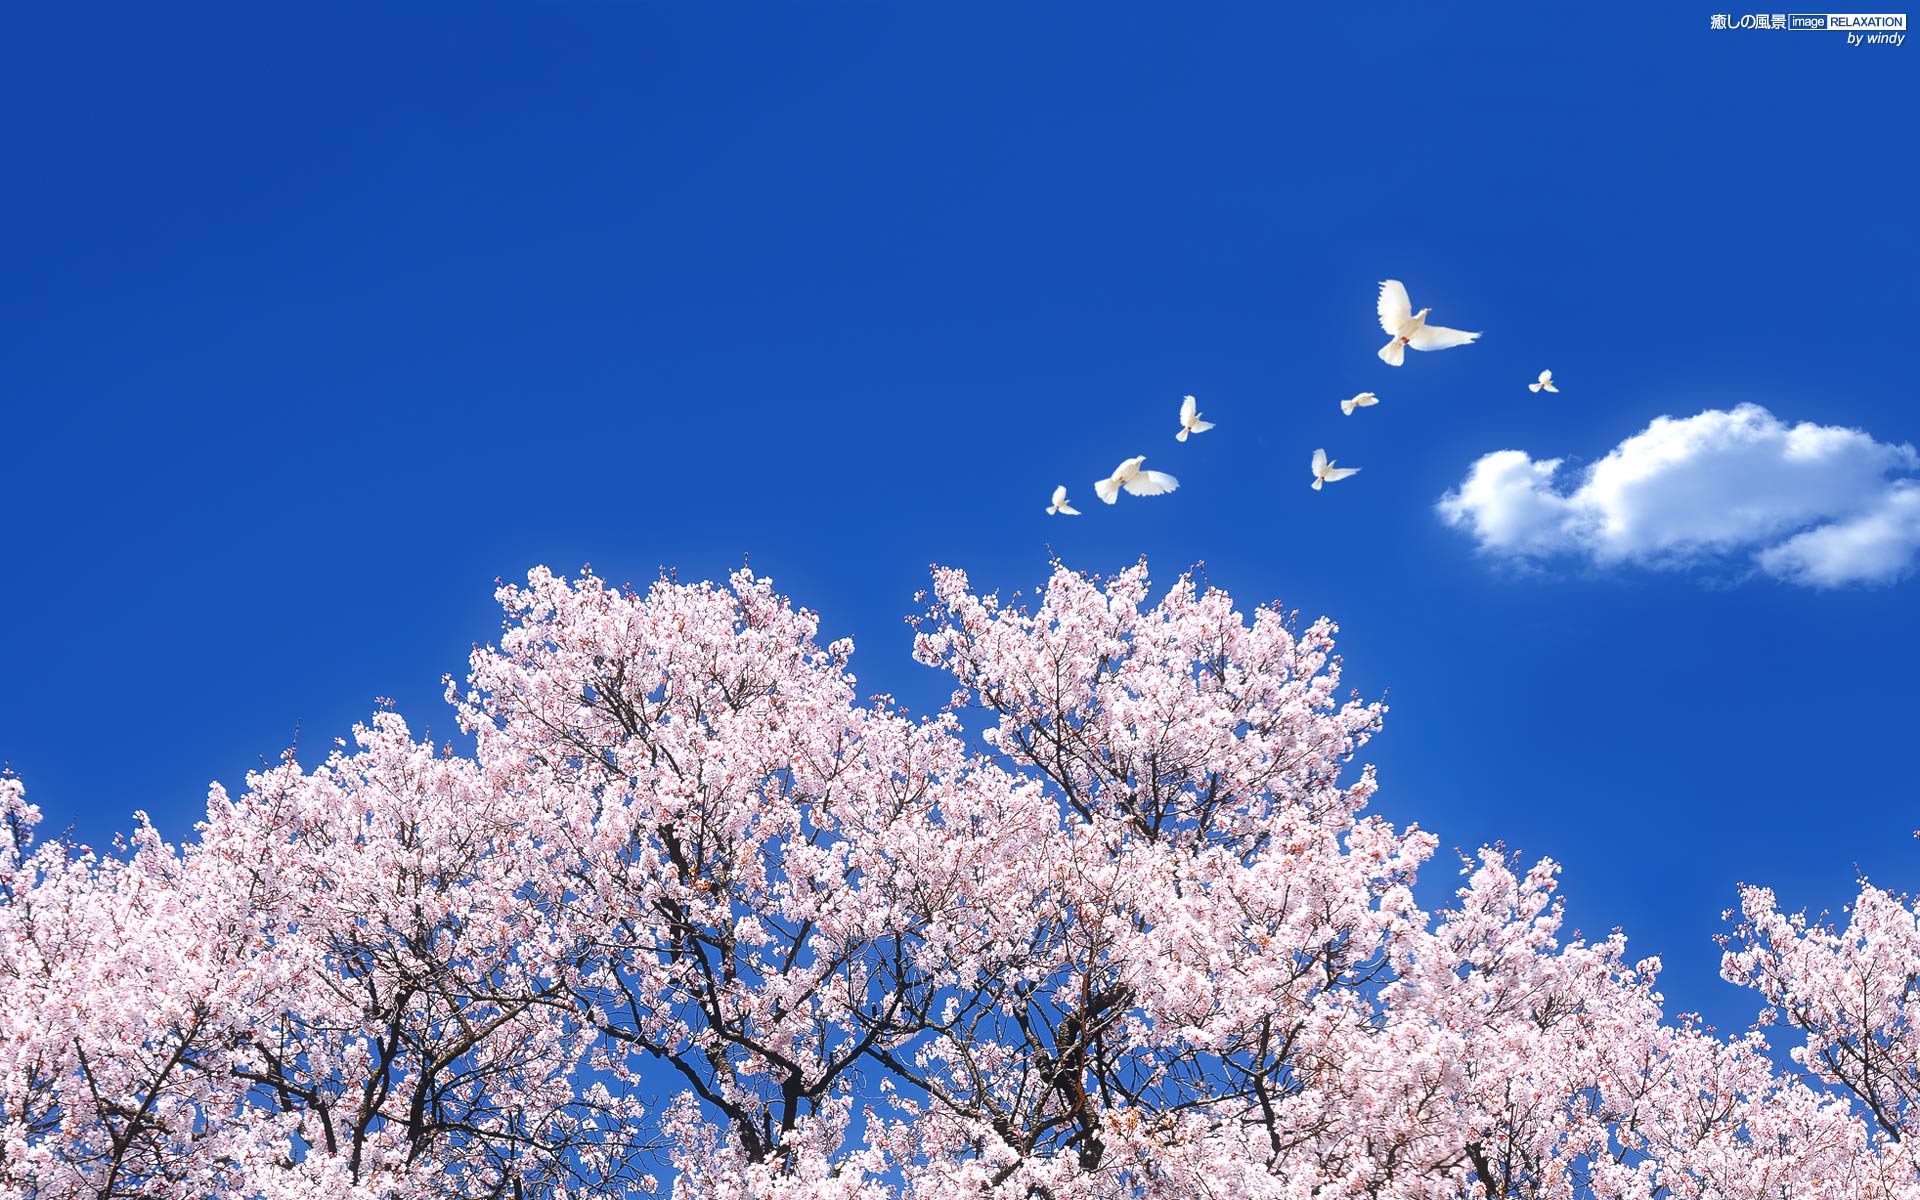 青空と満開の桜 癒しの風景 Image Relaxation 癒し壁紙